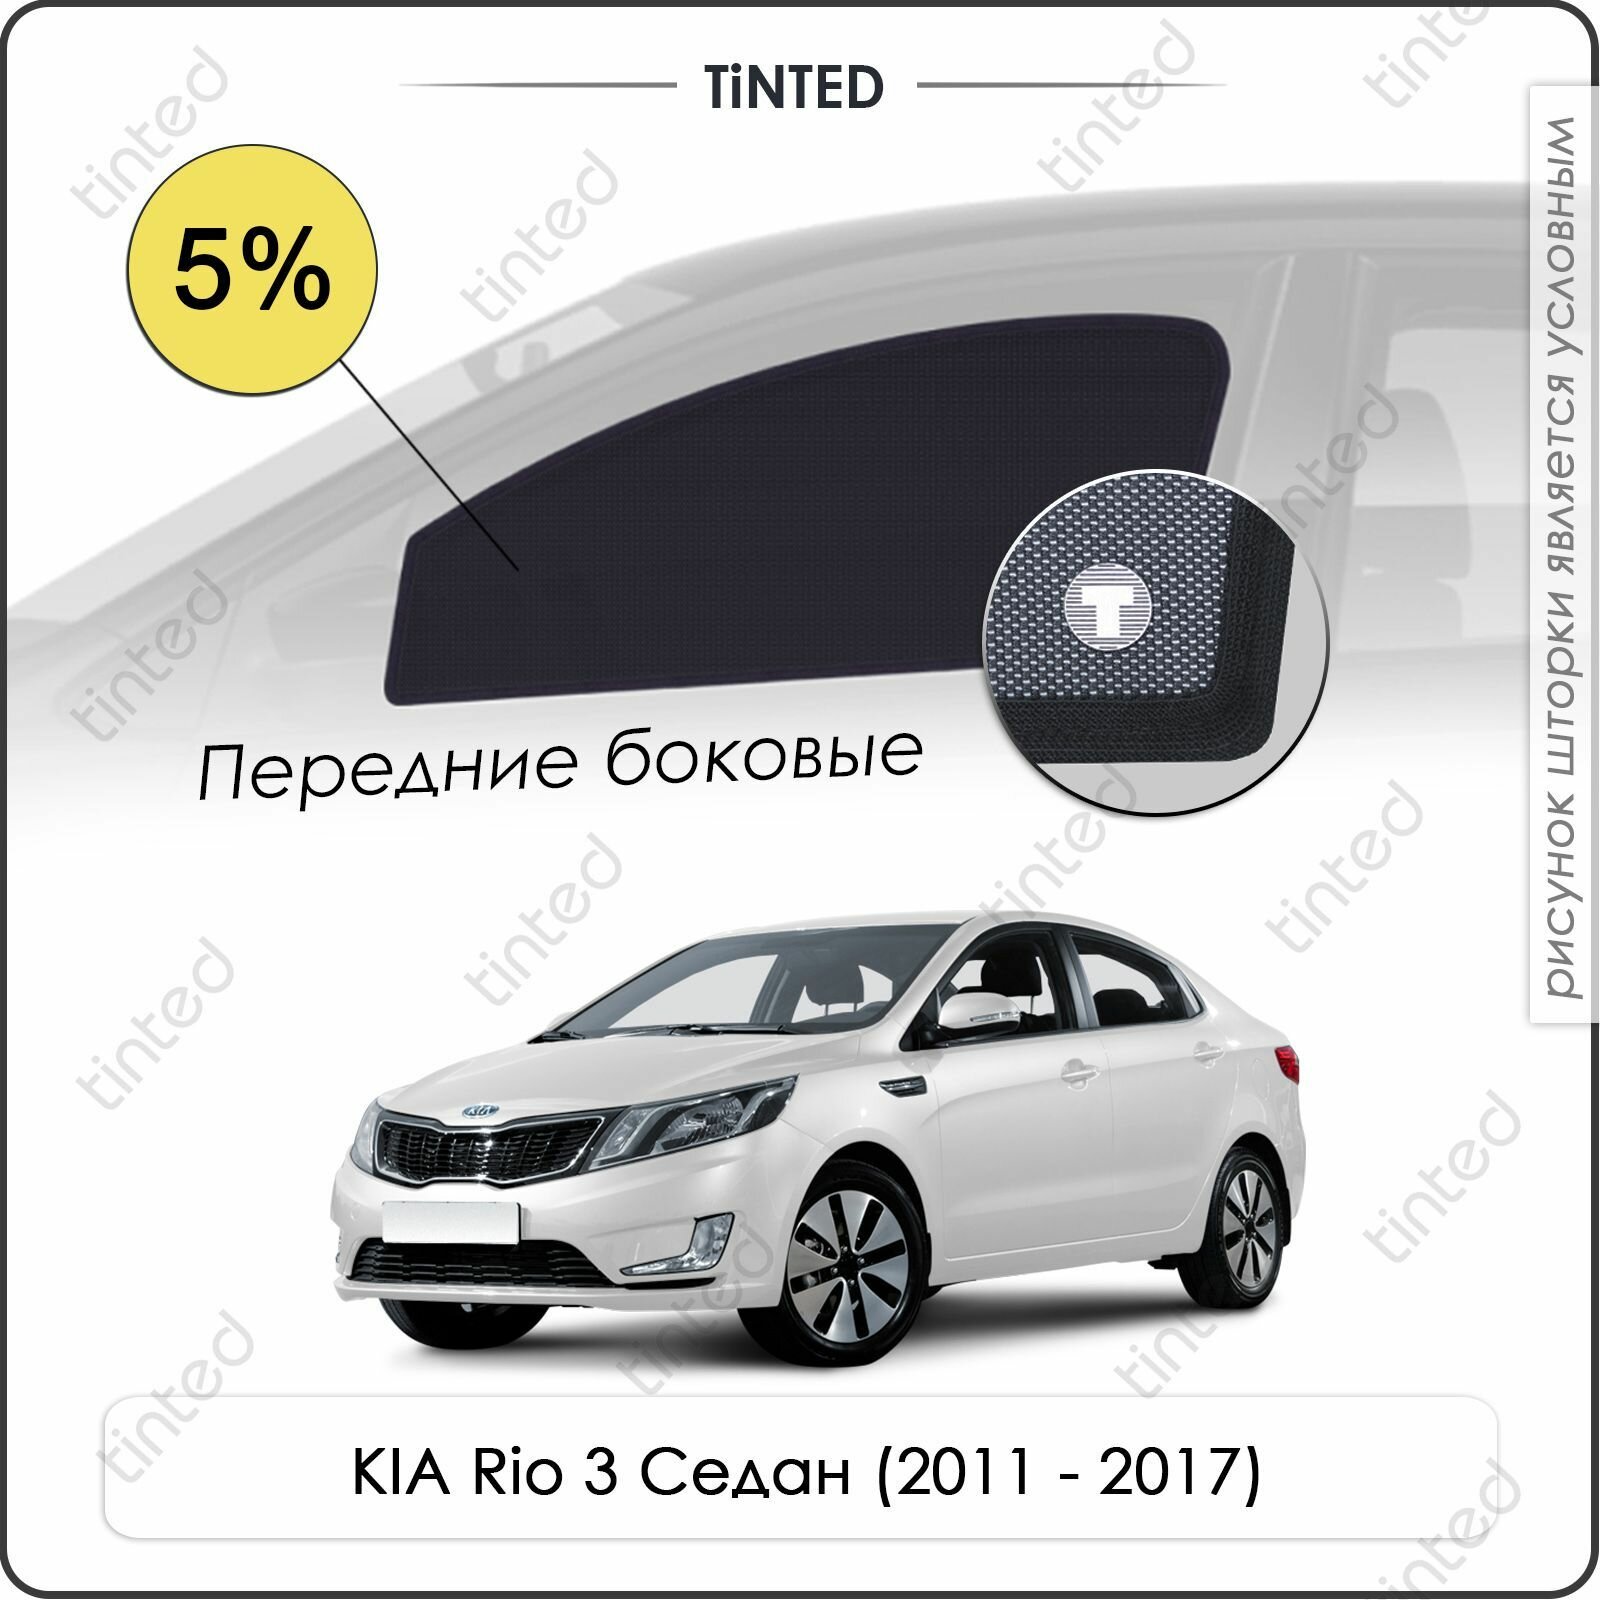 Шторки на автомобиль солнцезащитные KIA Rio 3 Седан 4дв. (2011 - 2017) на задние двери 5% сетки от солнца в машину КИА РИО Каркасные автошторки Premium